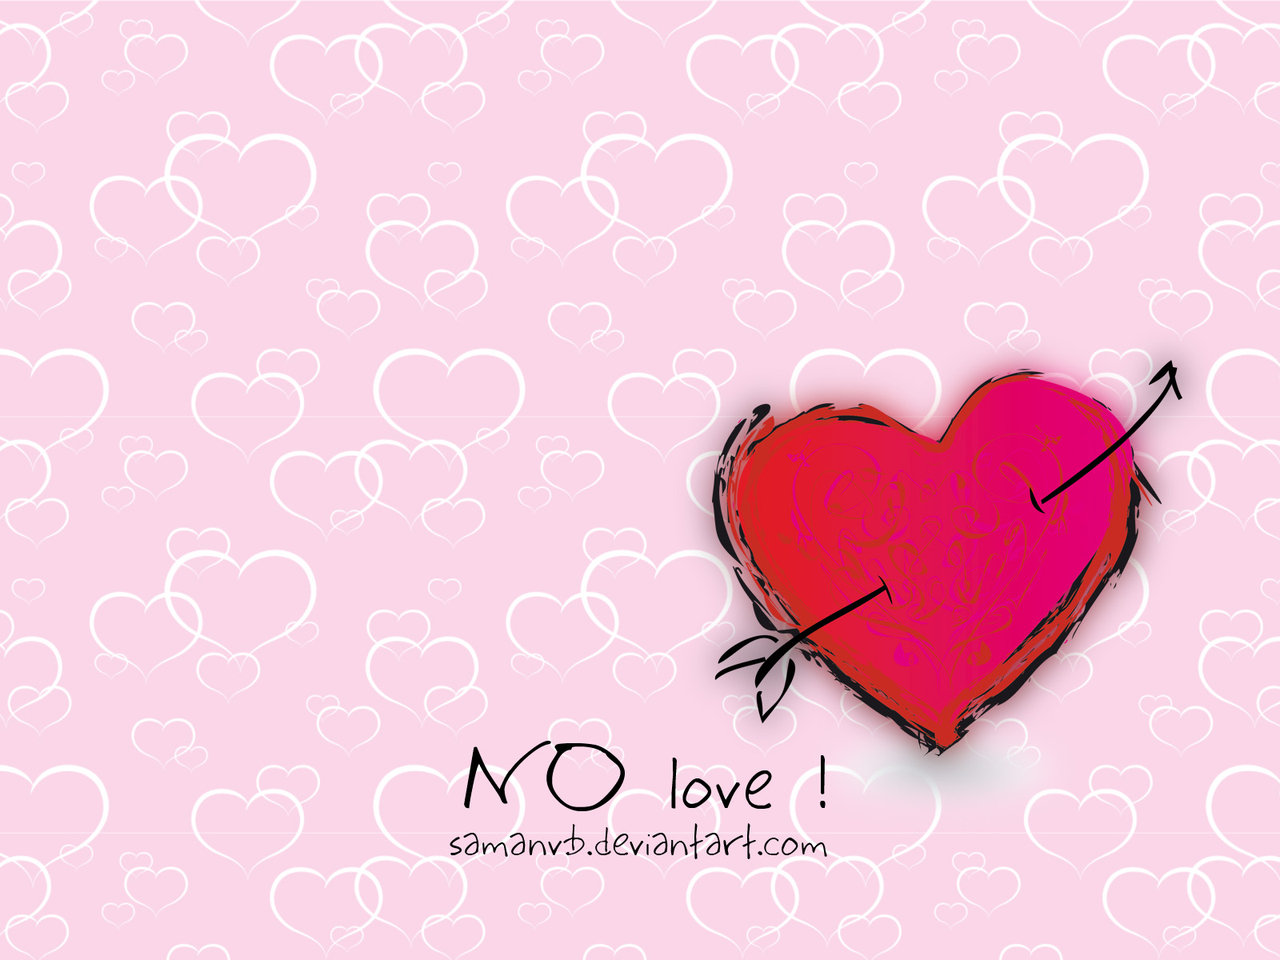 Lover no